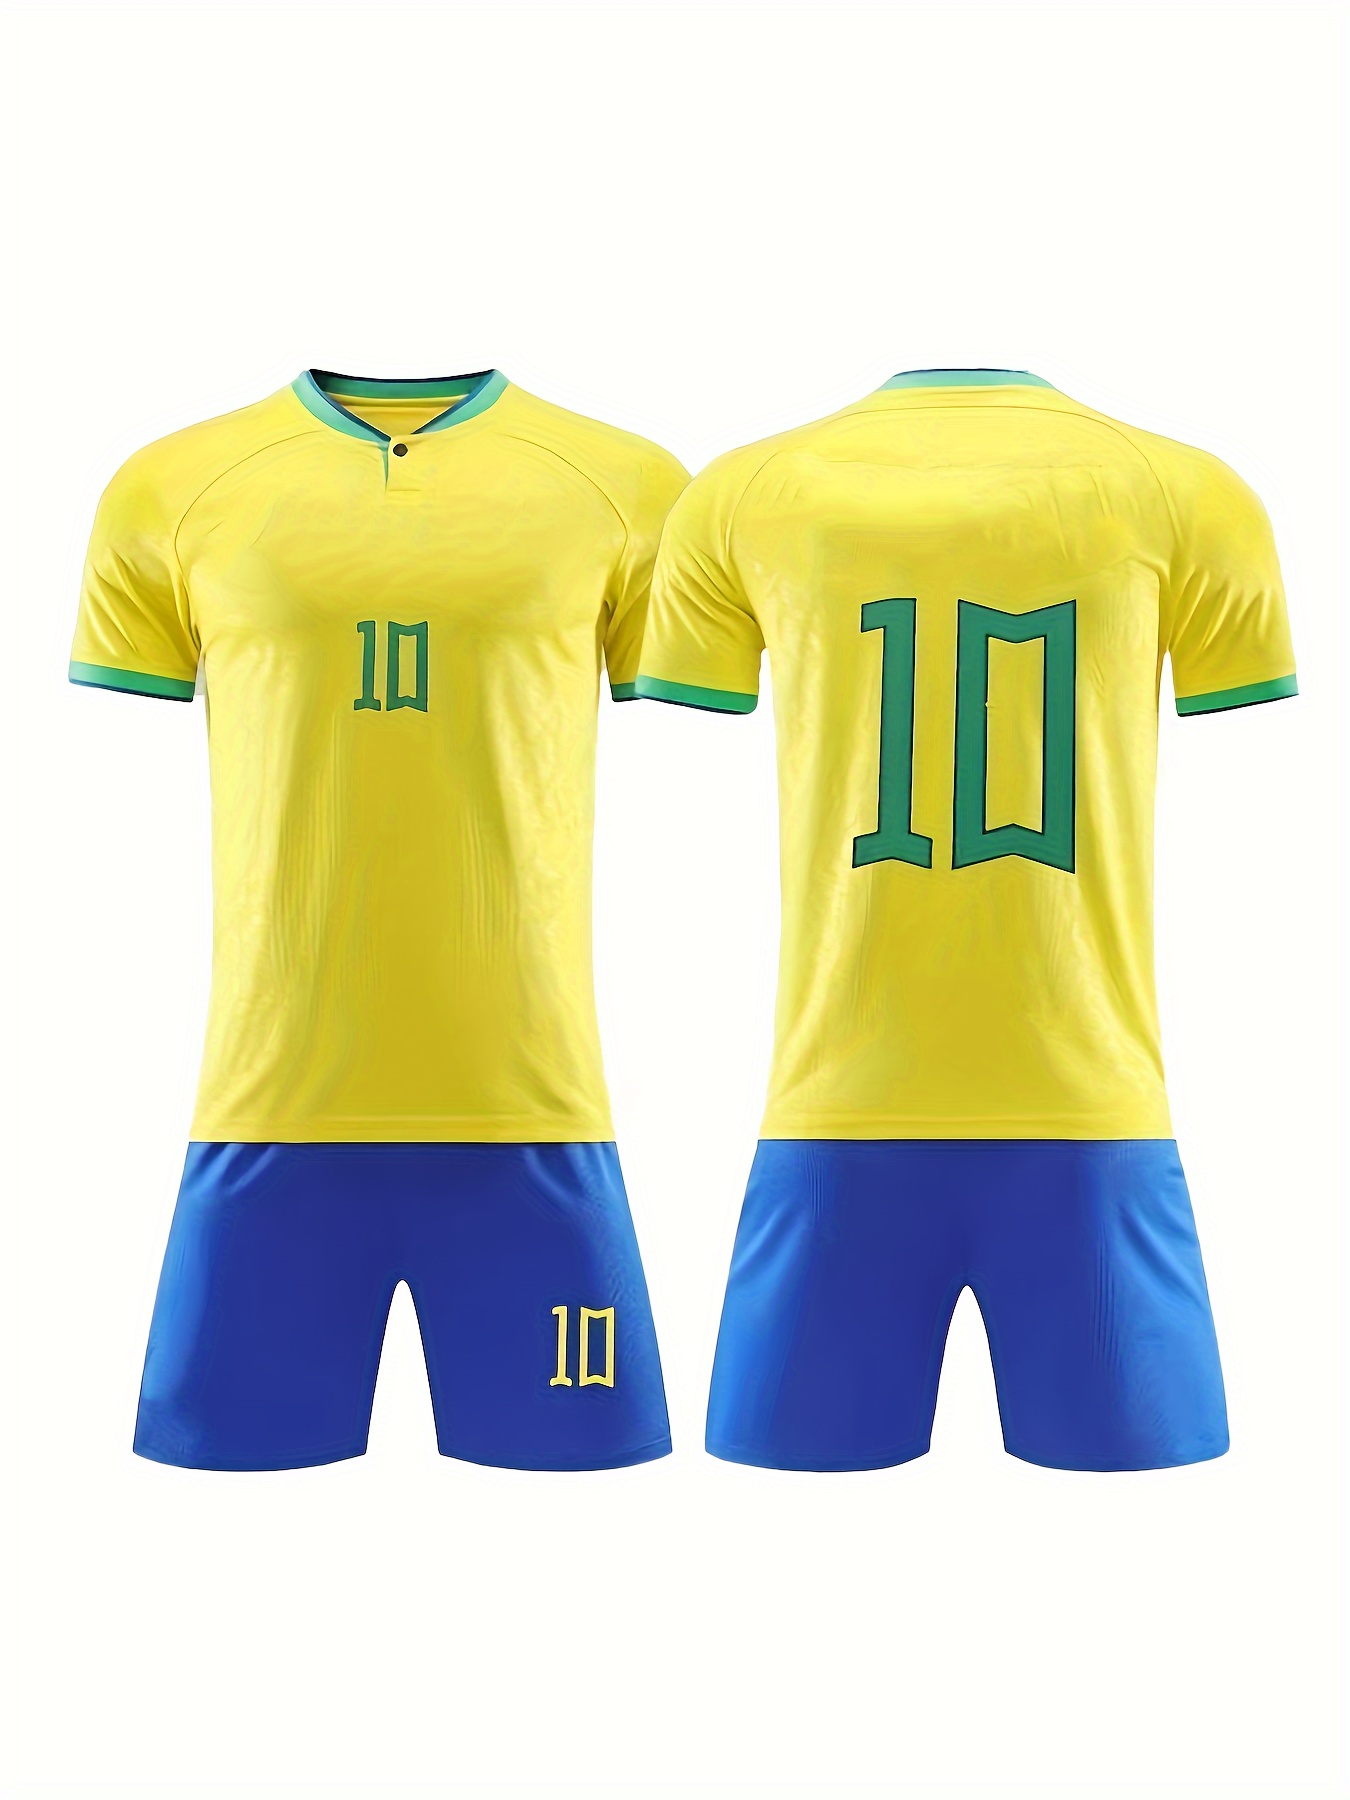 Mens/Kids 2022 Soccer Game Brazil Soccer #20 Jerseys Soccer Team Shirts 